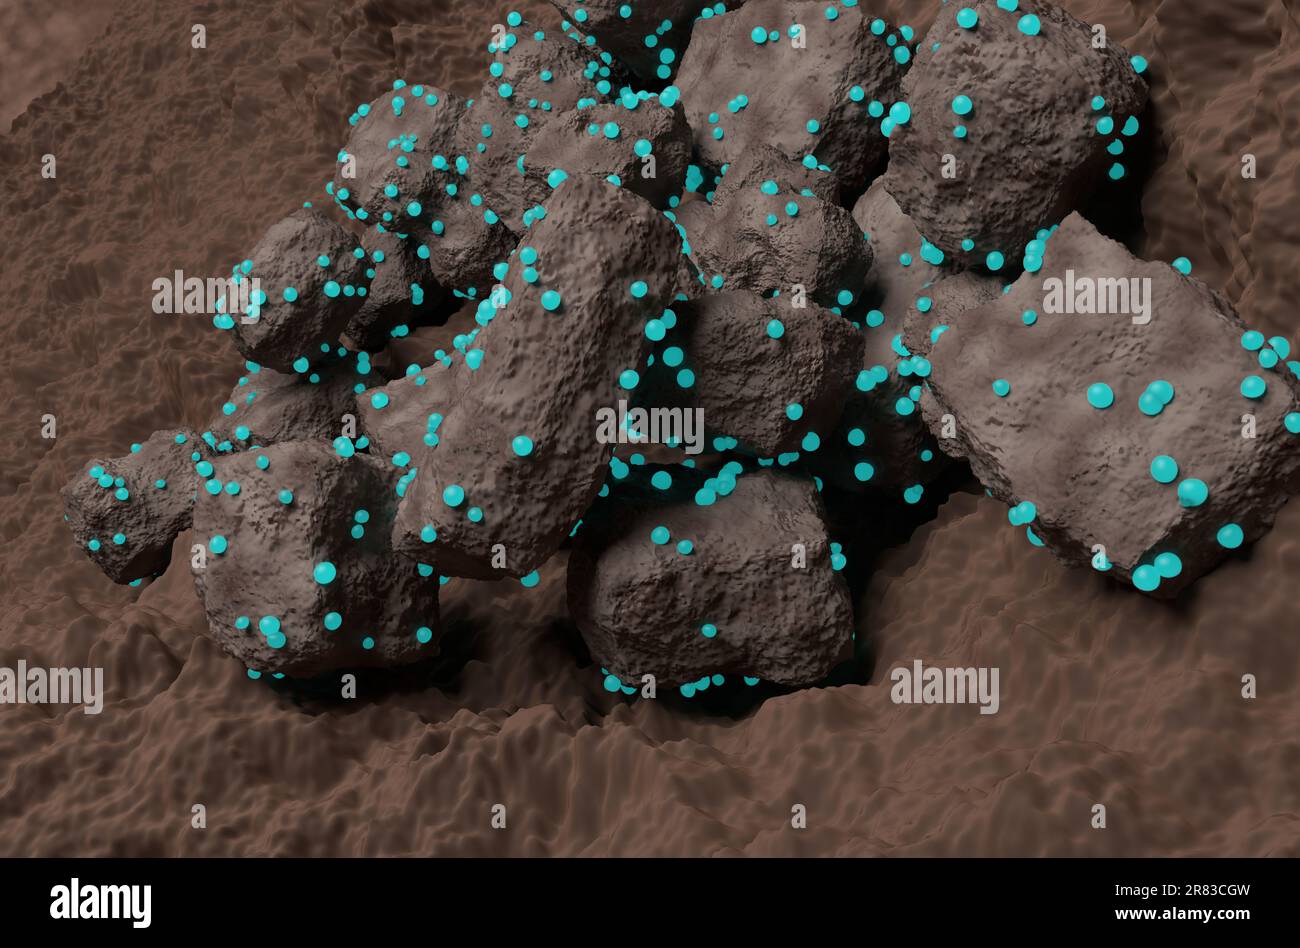 Rock captured the carbon dioxide gas bubbles - closeup view 3d illustration Stock Photo